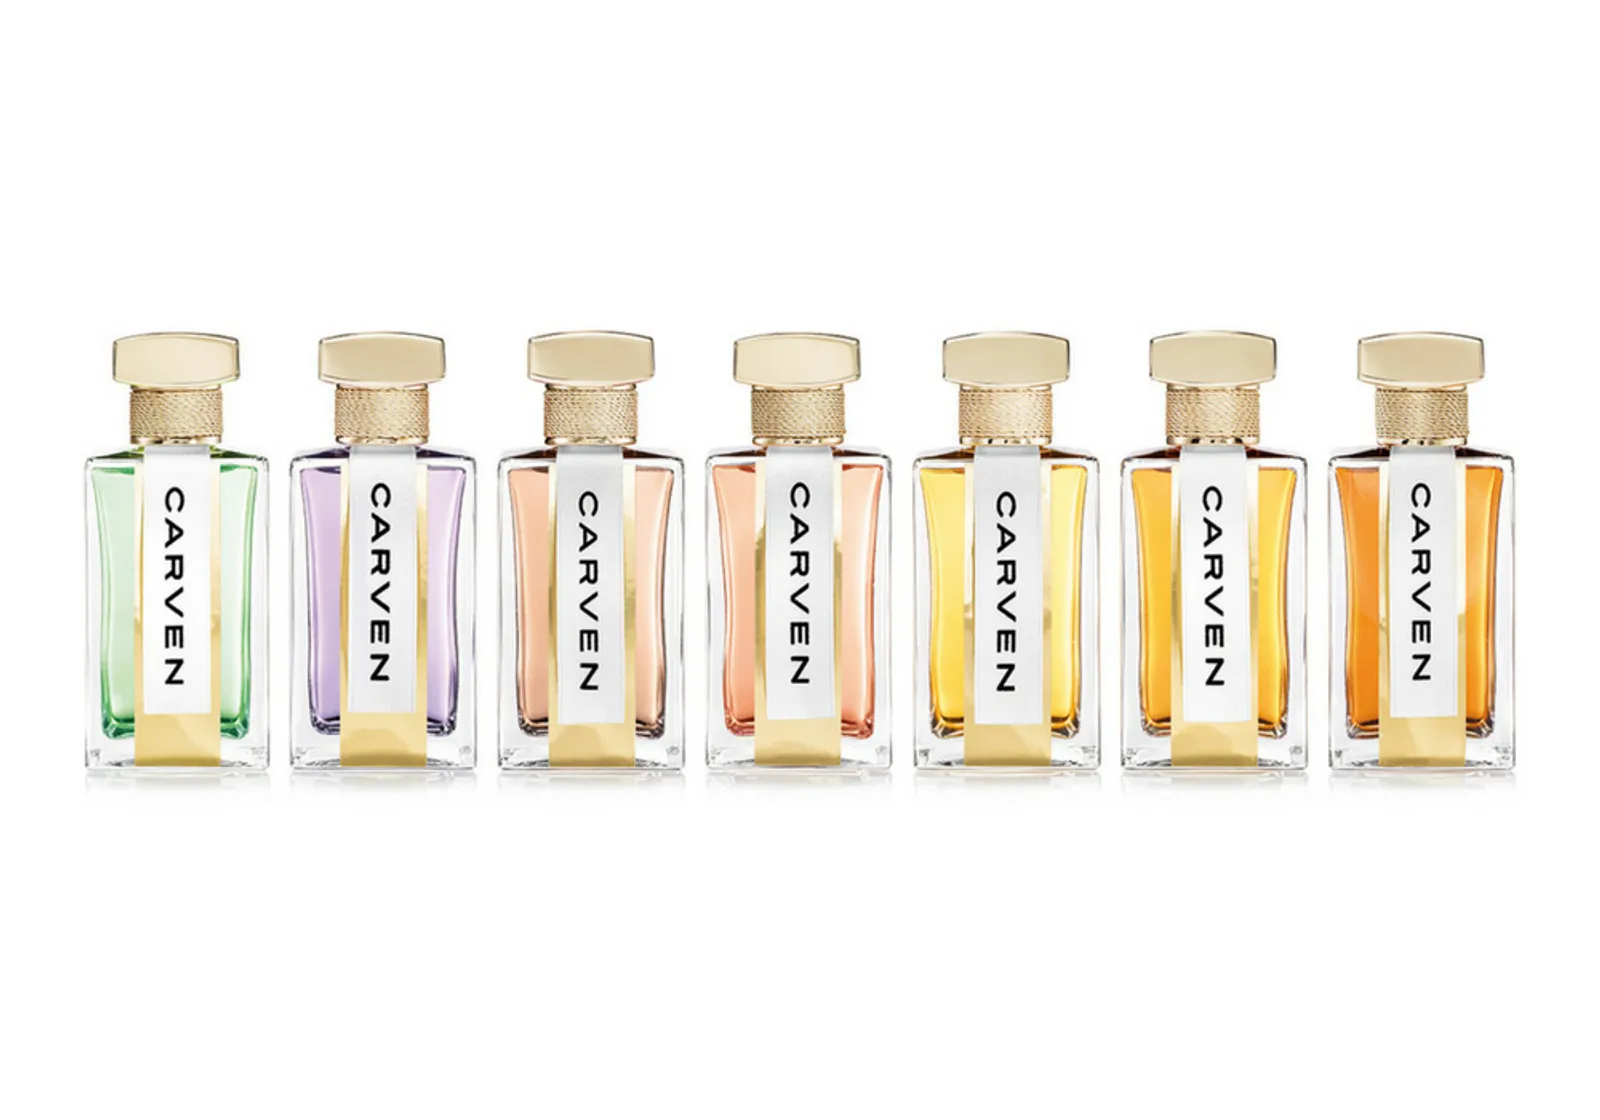 Carven Rilis 7 Parfum yang Terinspirasi dari Seluruh Dunia